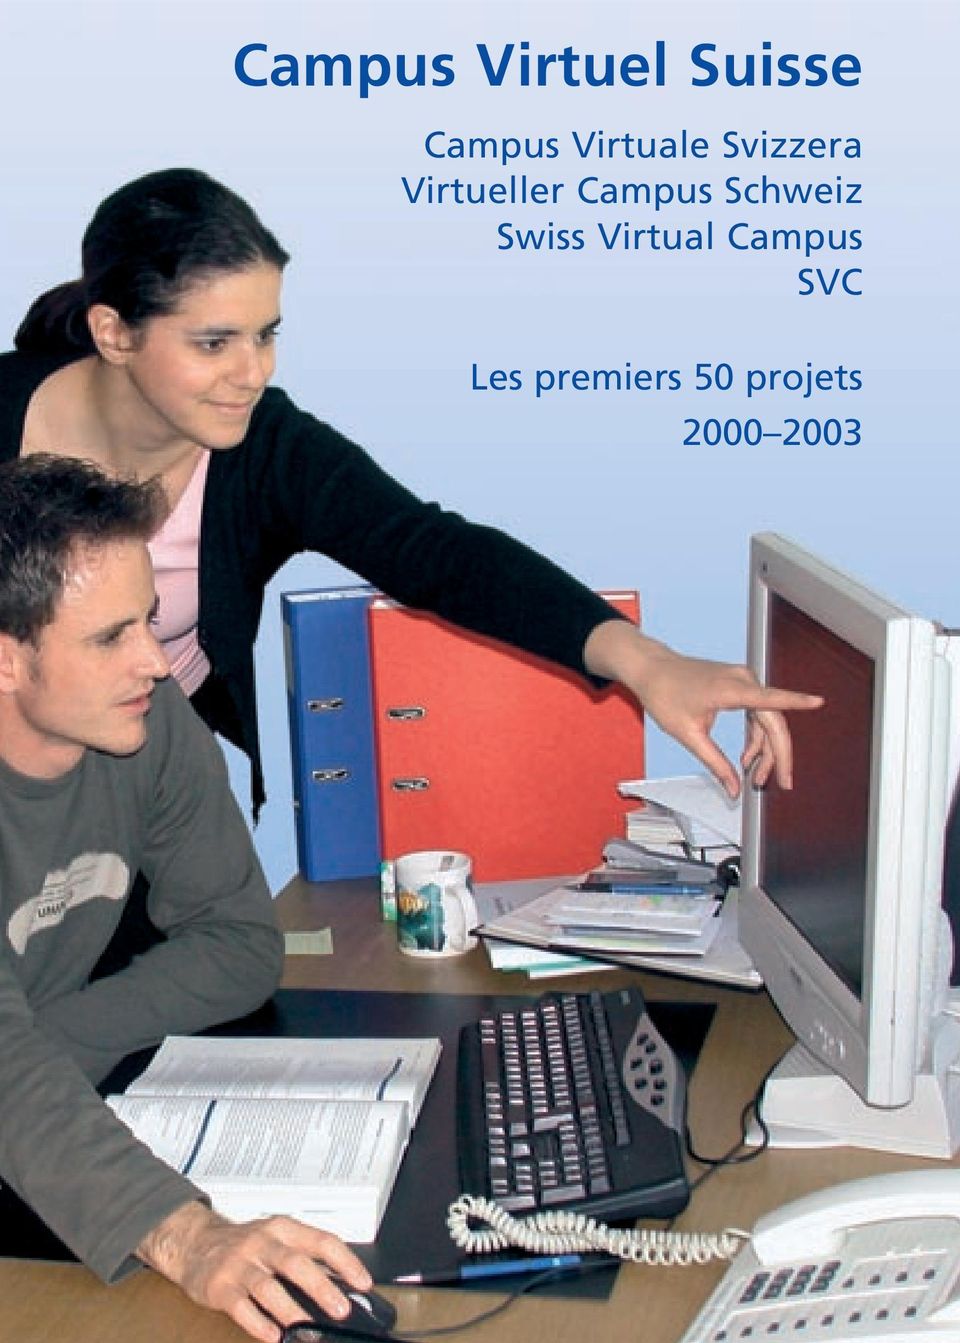 Campus Schweiz Swiss Virtual